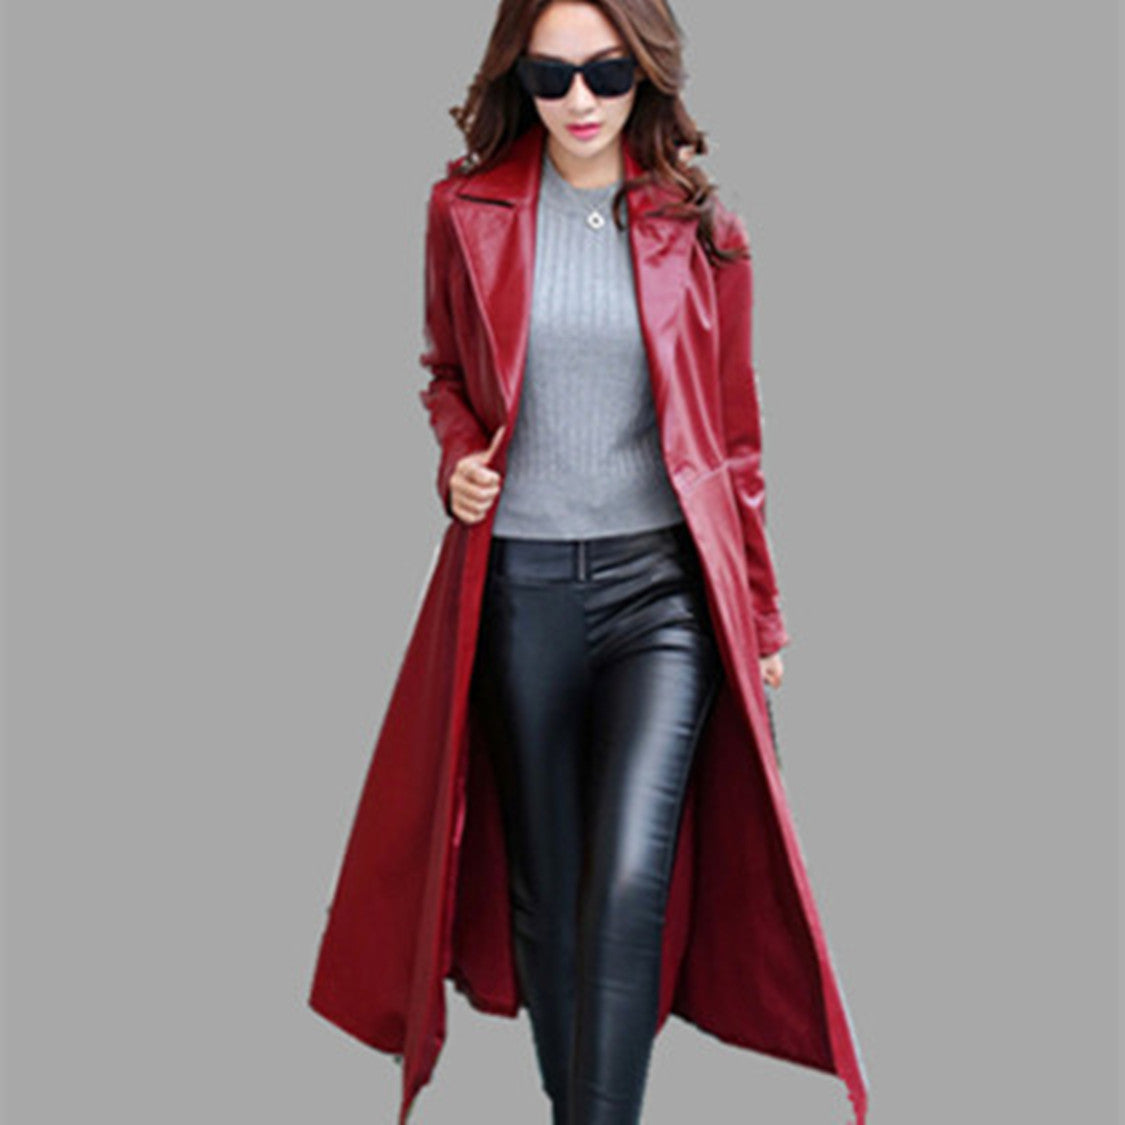 Thin PU leather long leather jacket | Nowena